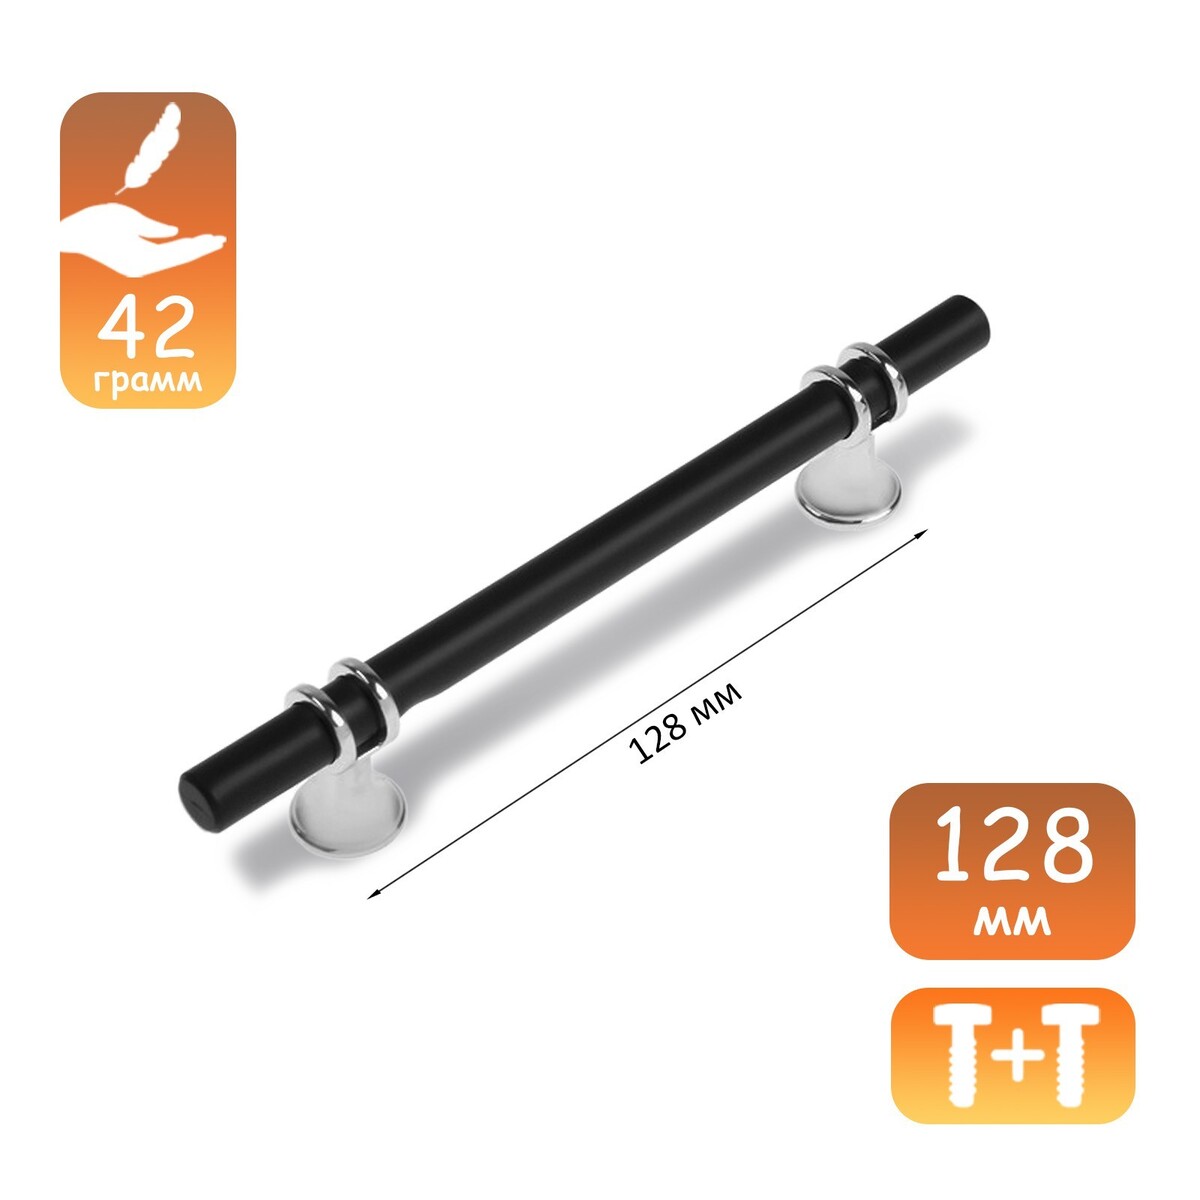 Ручка скоба cappio, м/о 128 мм, d=12 mm, пластик, цвет хром/черный ручка кнопка cappio рк019 d 20 мм пластик матовый хром